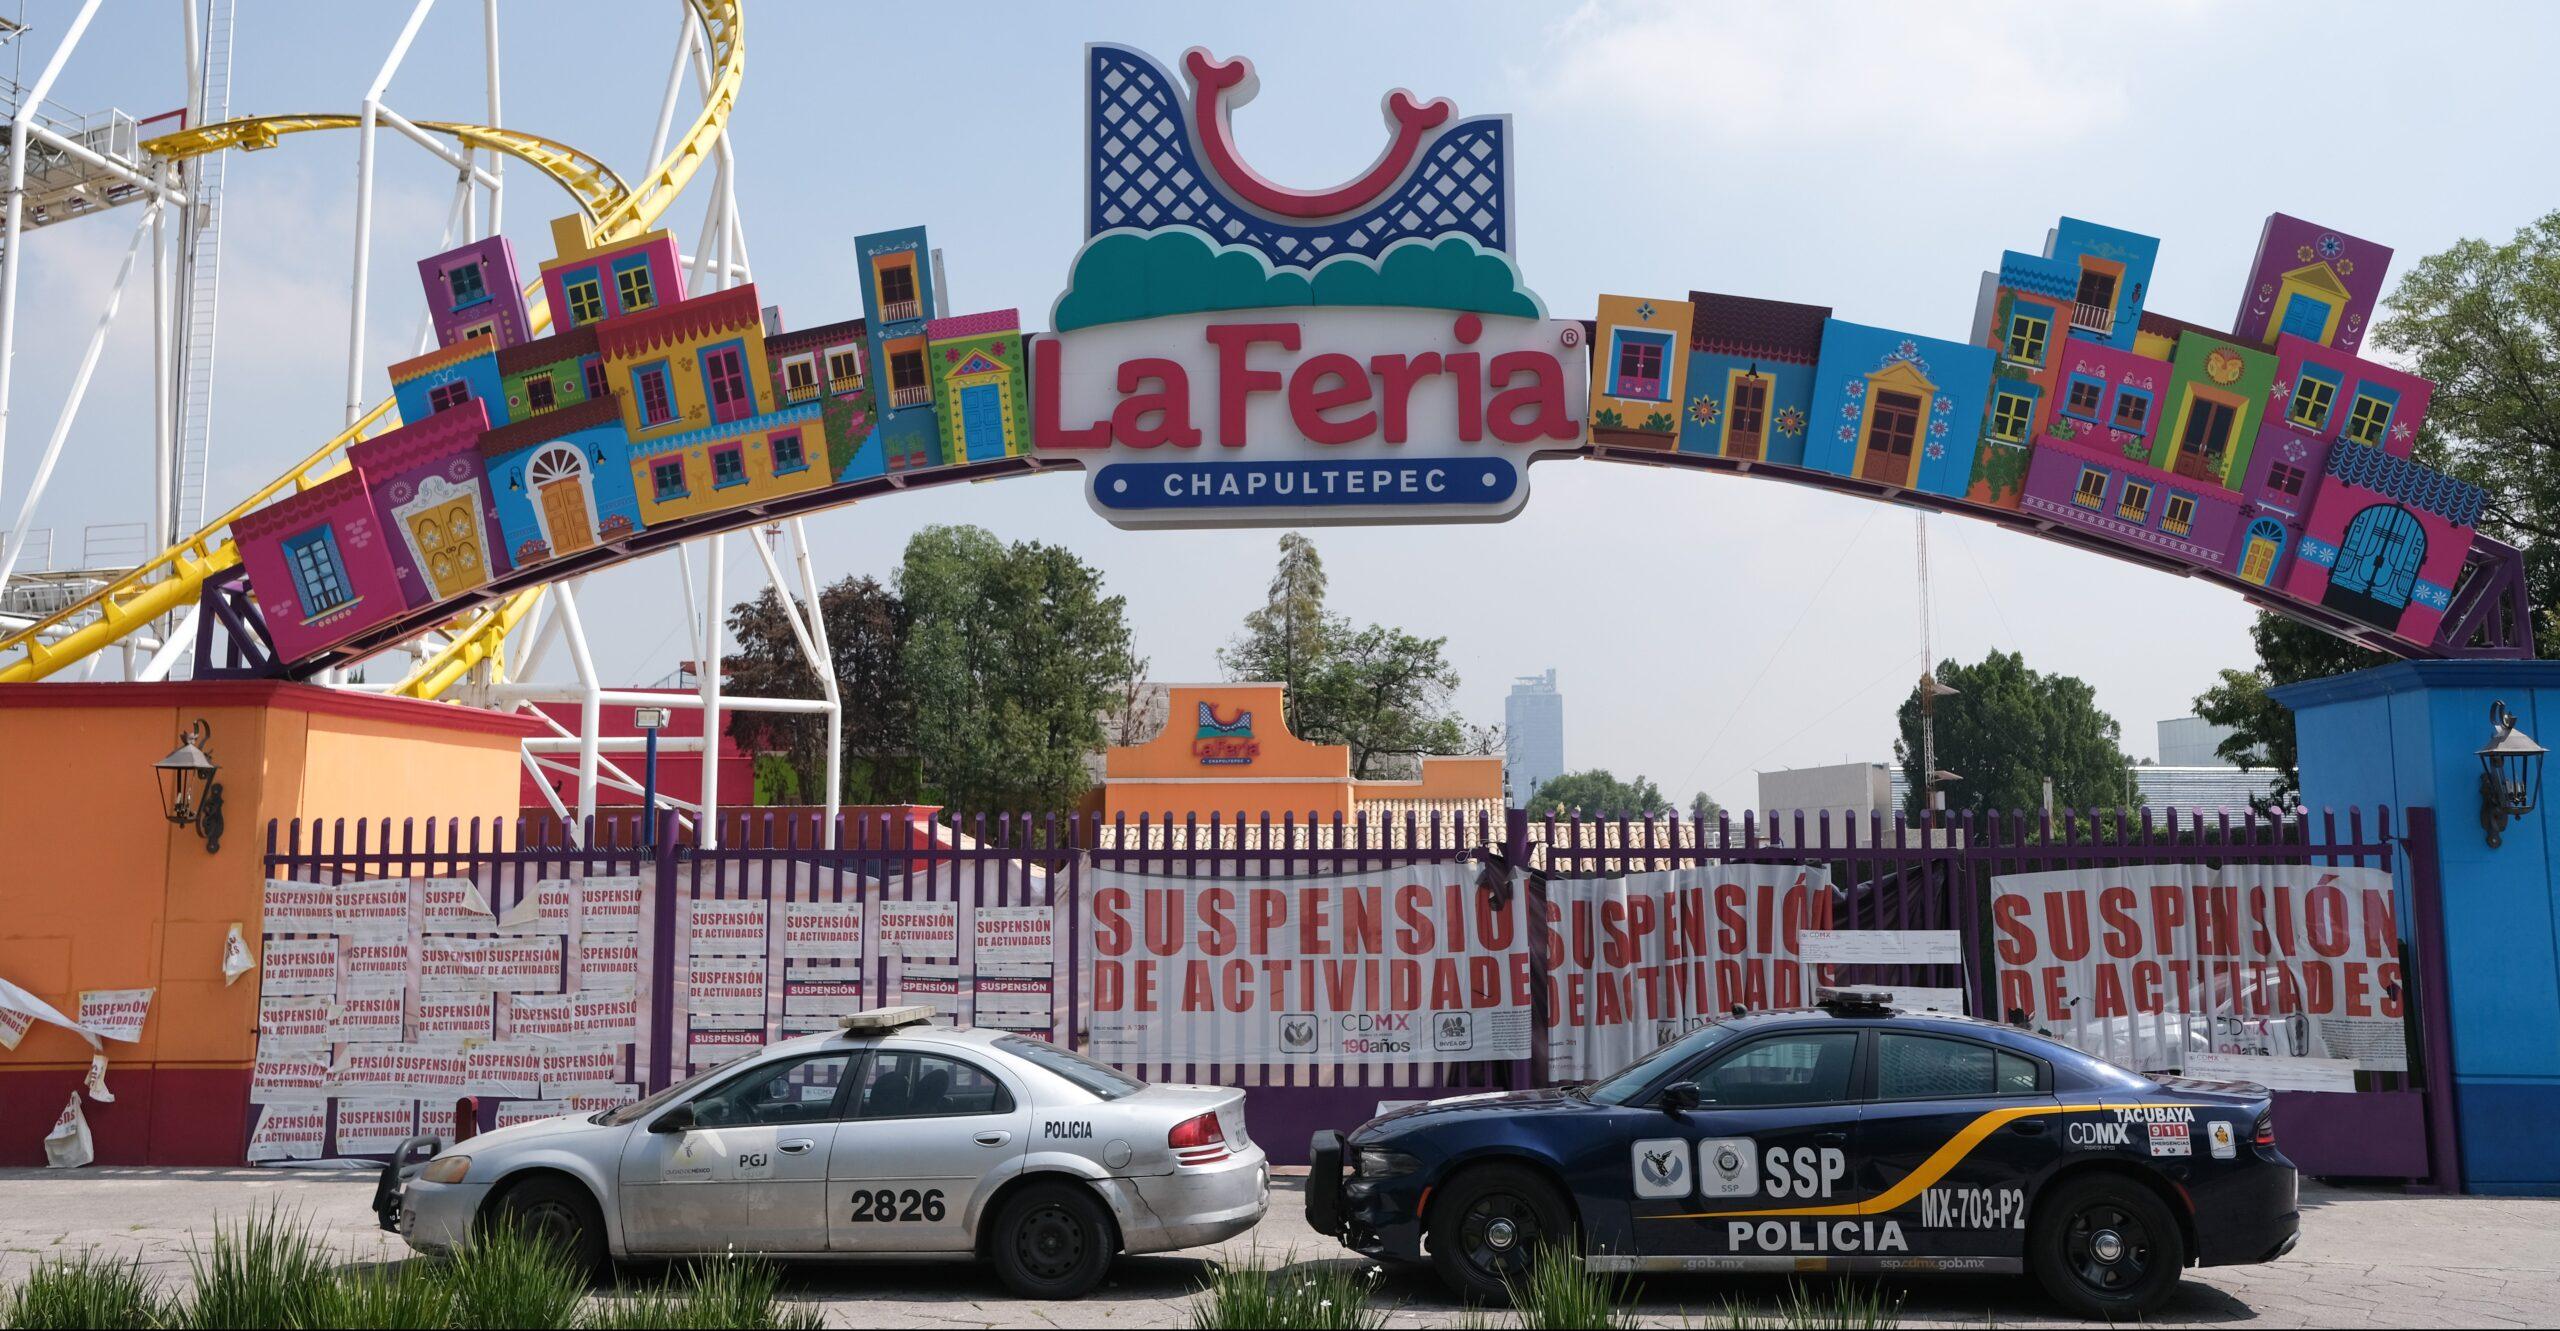 Tornillos del juego de la Feria de Chapultepec se salieron provocando el descarrilamiento, dice Procuraduría